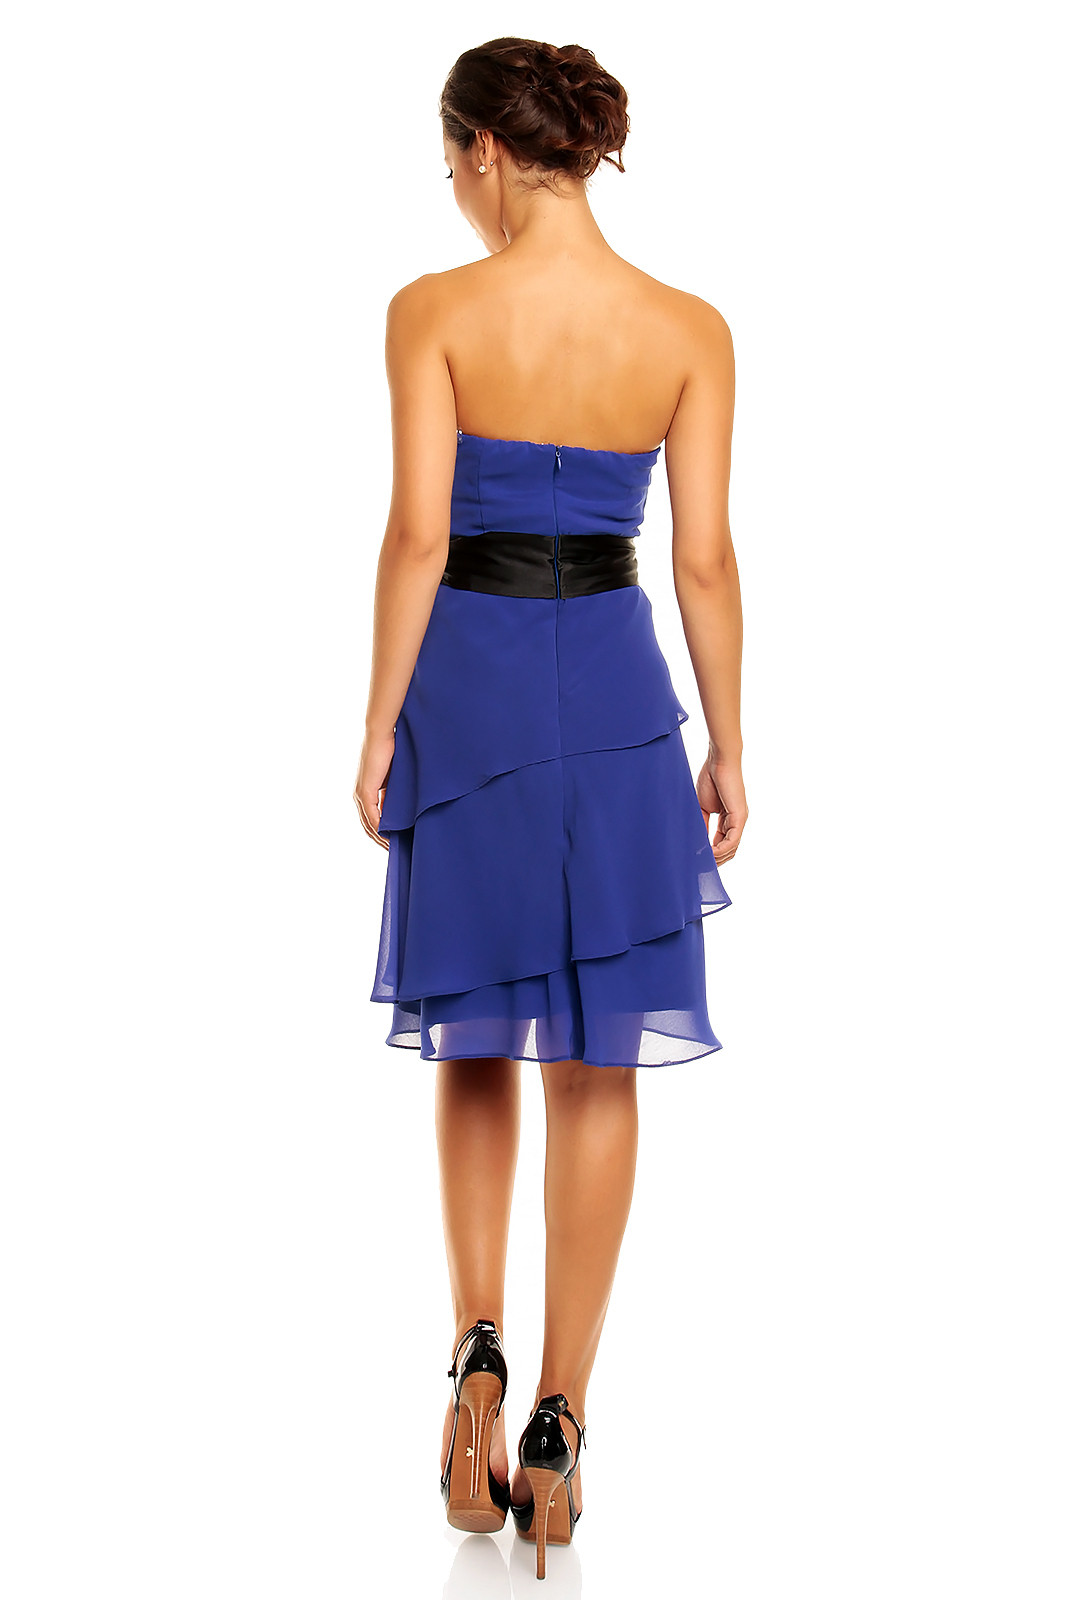 Společenské šaty HS-345_BL s mašlí a sukní s volány modré - MAYAADI XL